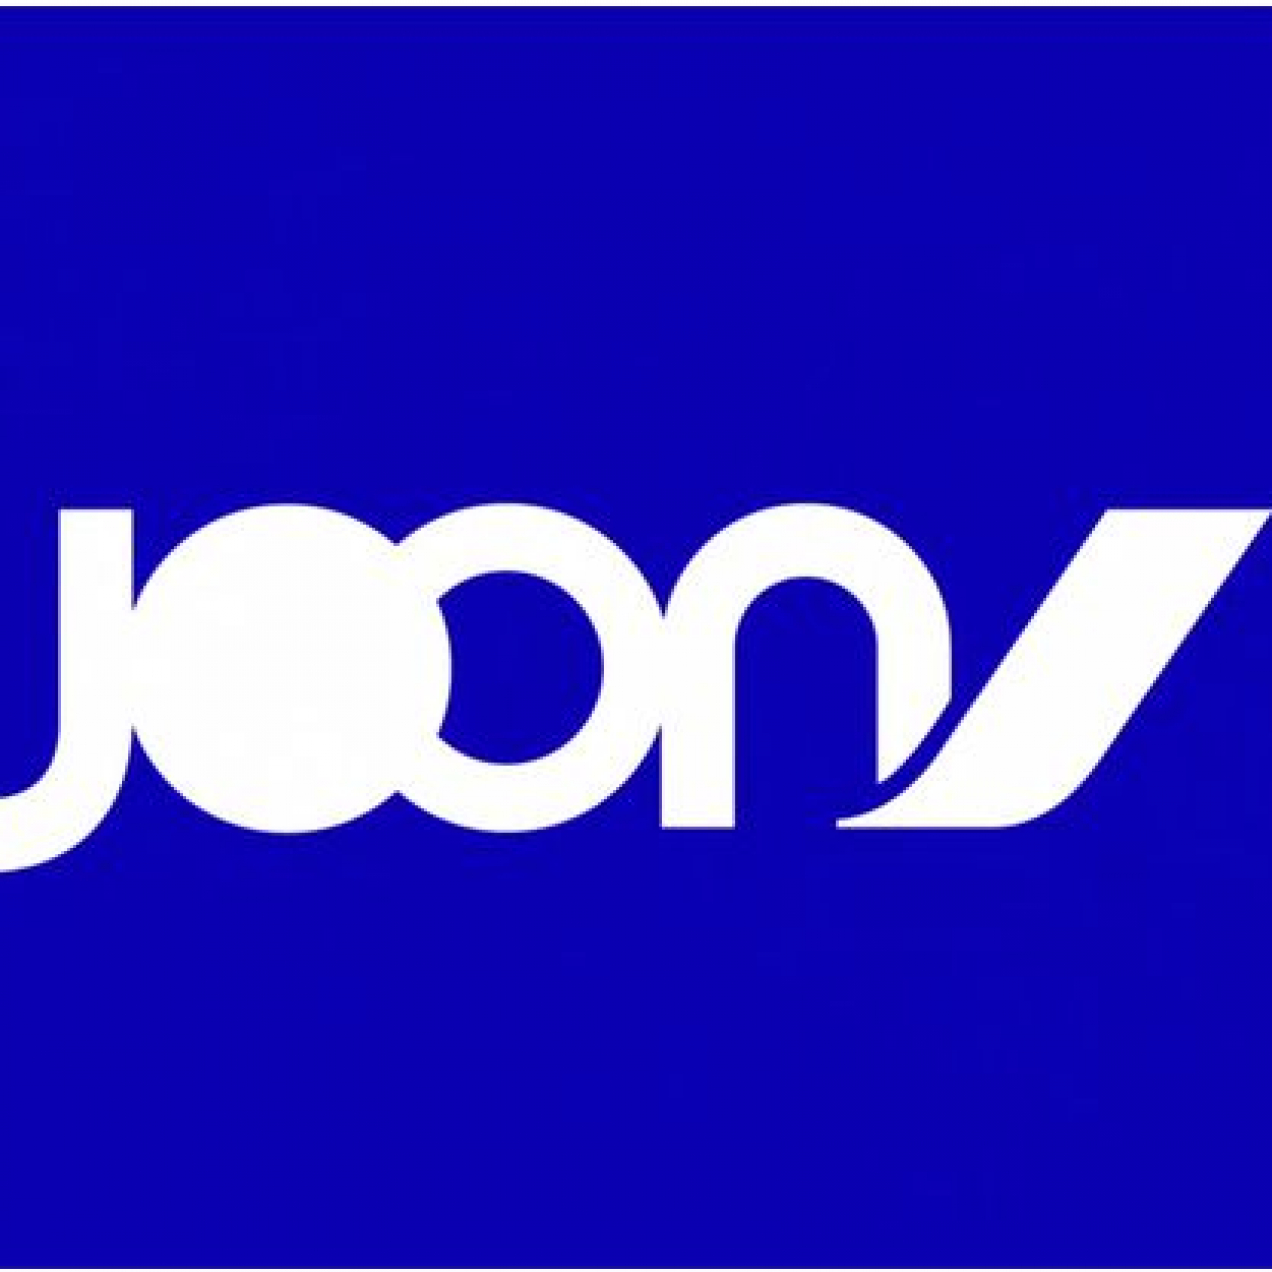 Joon, La nouvelle compagnie low-cost d’Air France